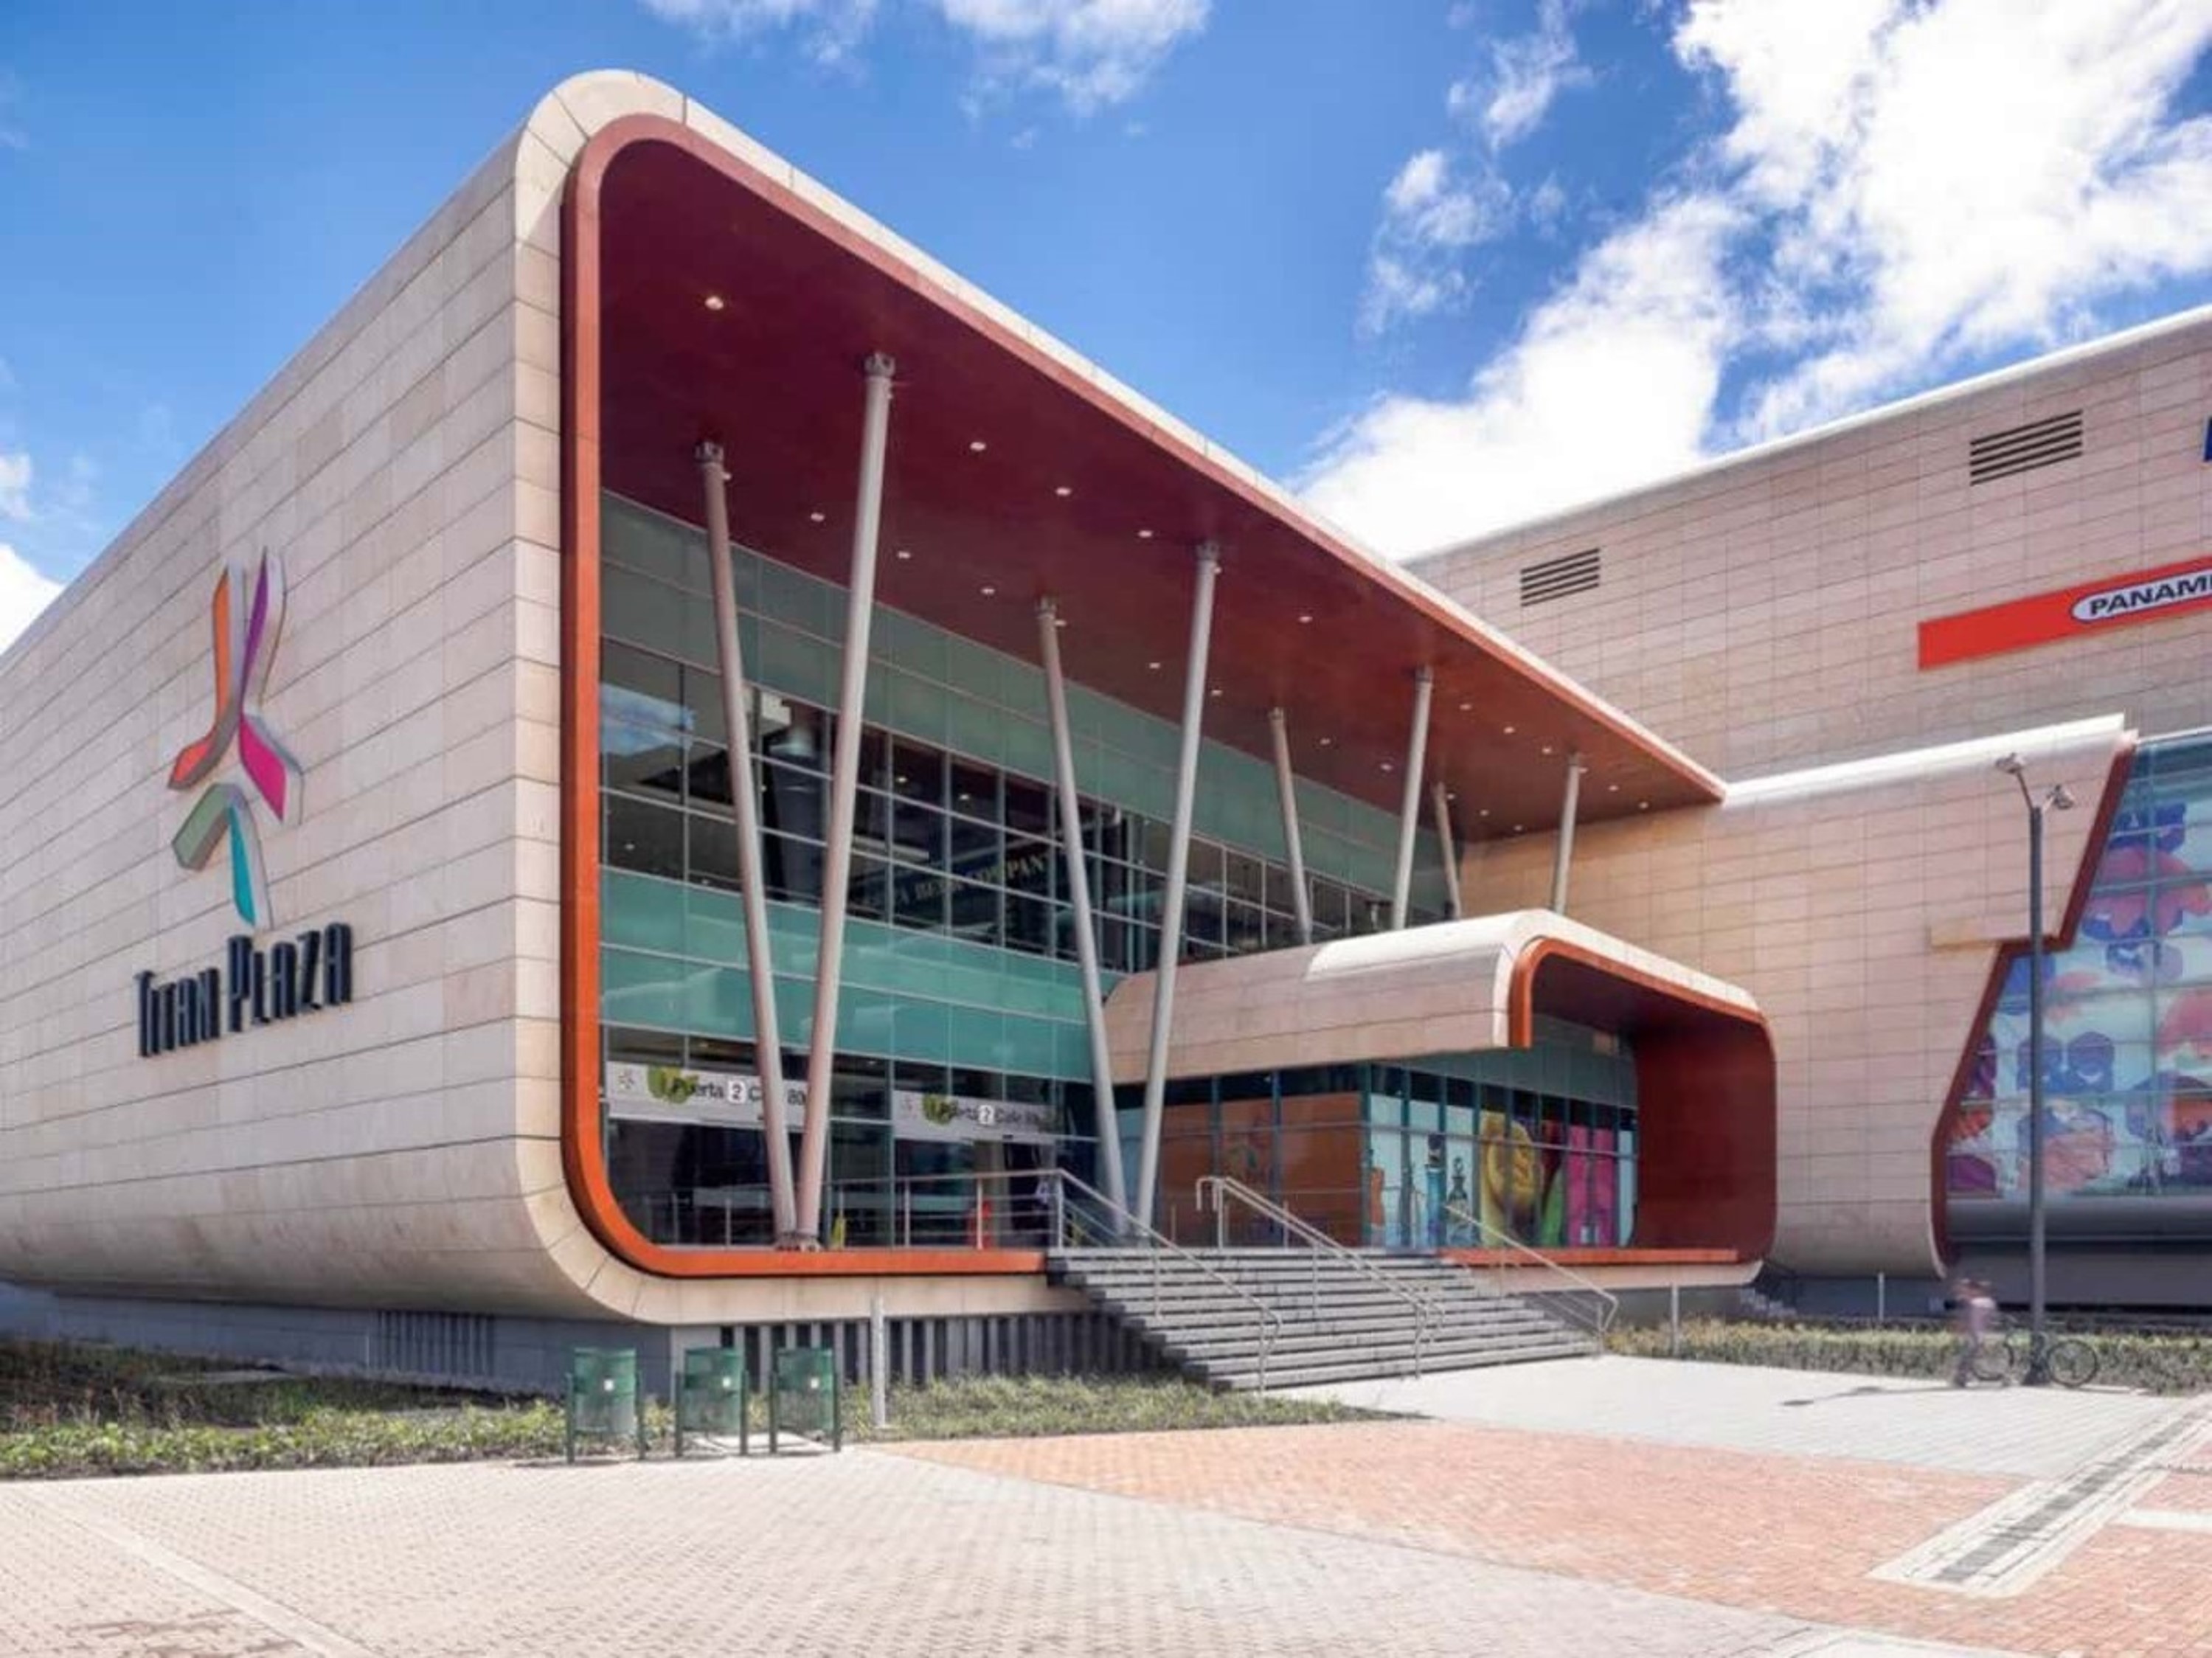 Centros comerciales más grandes de Colombia: Titan Plaza, Mall Plaza y 8 operadores de centros comerciales.